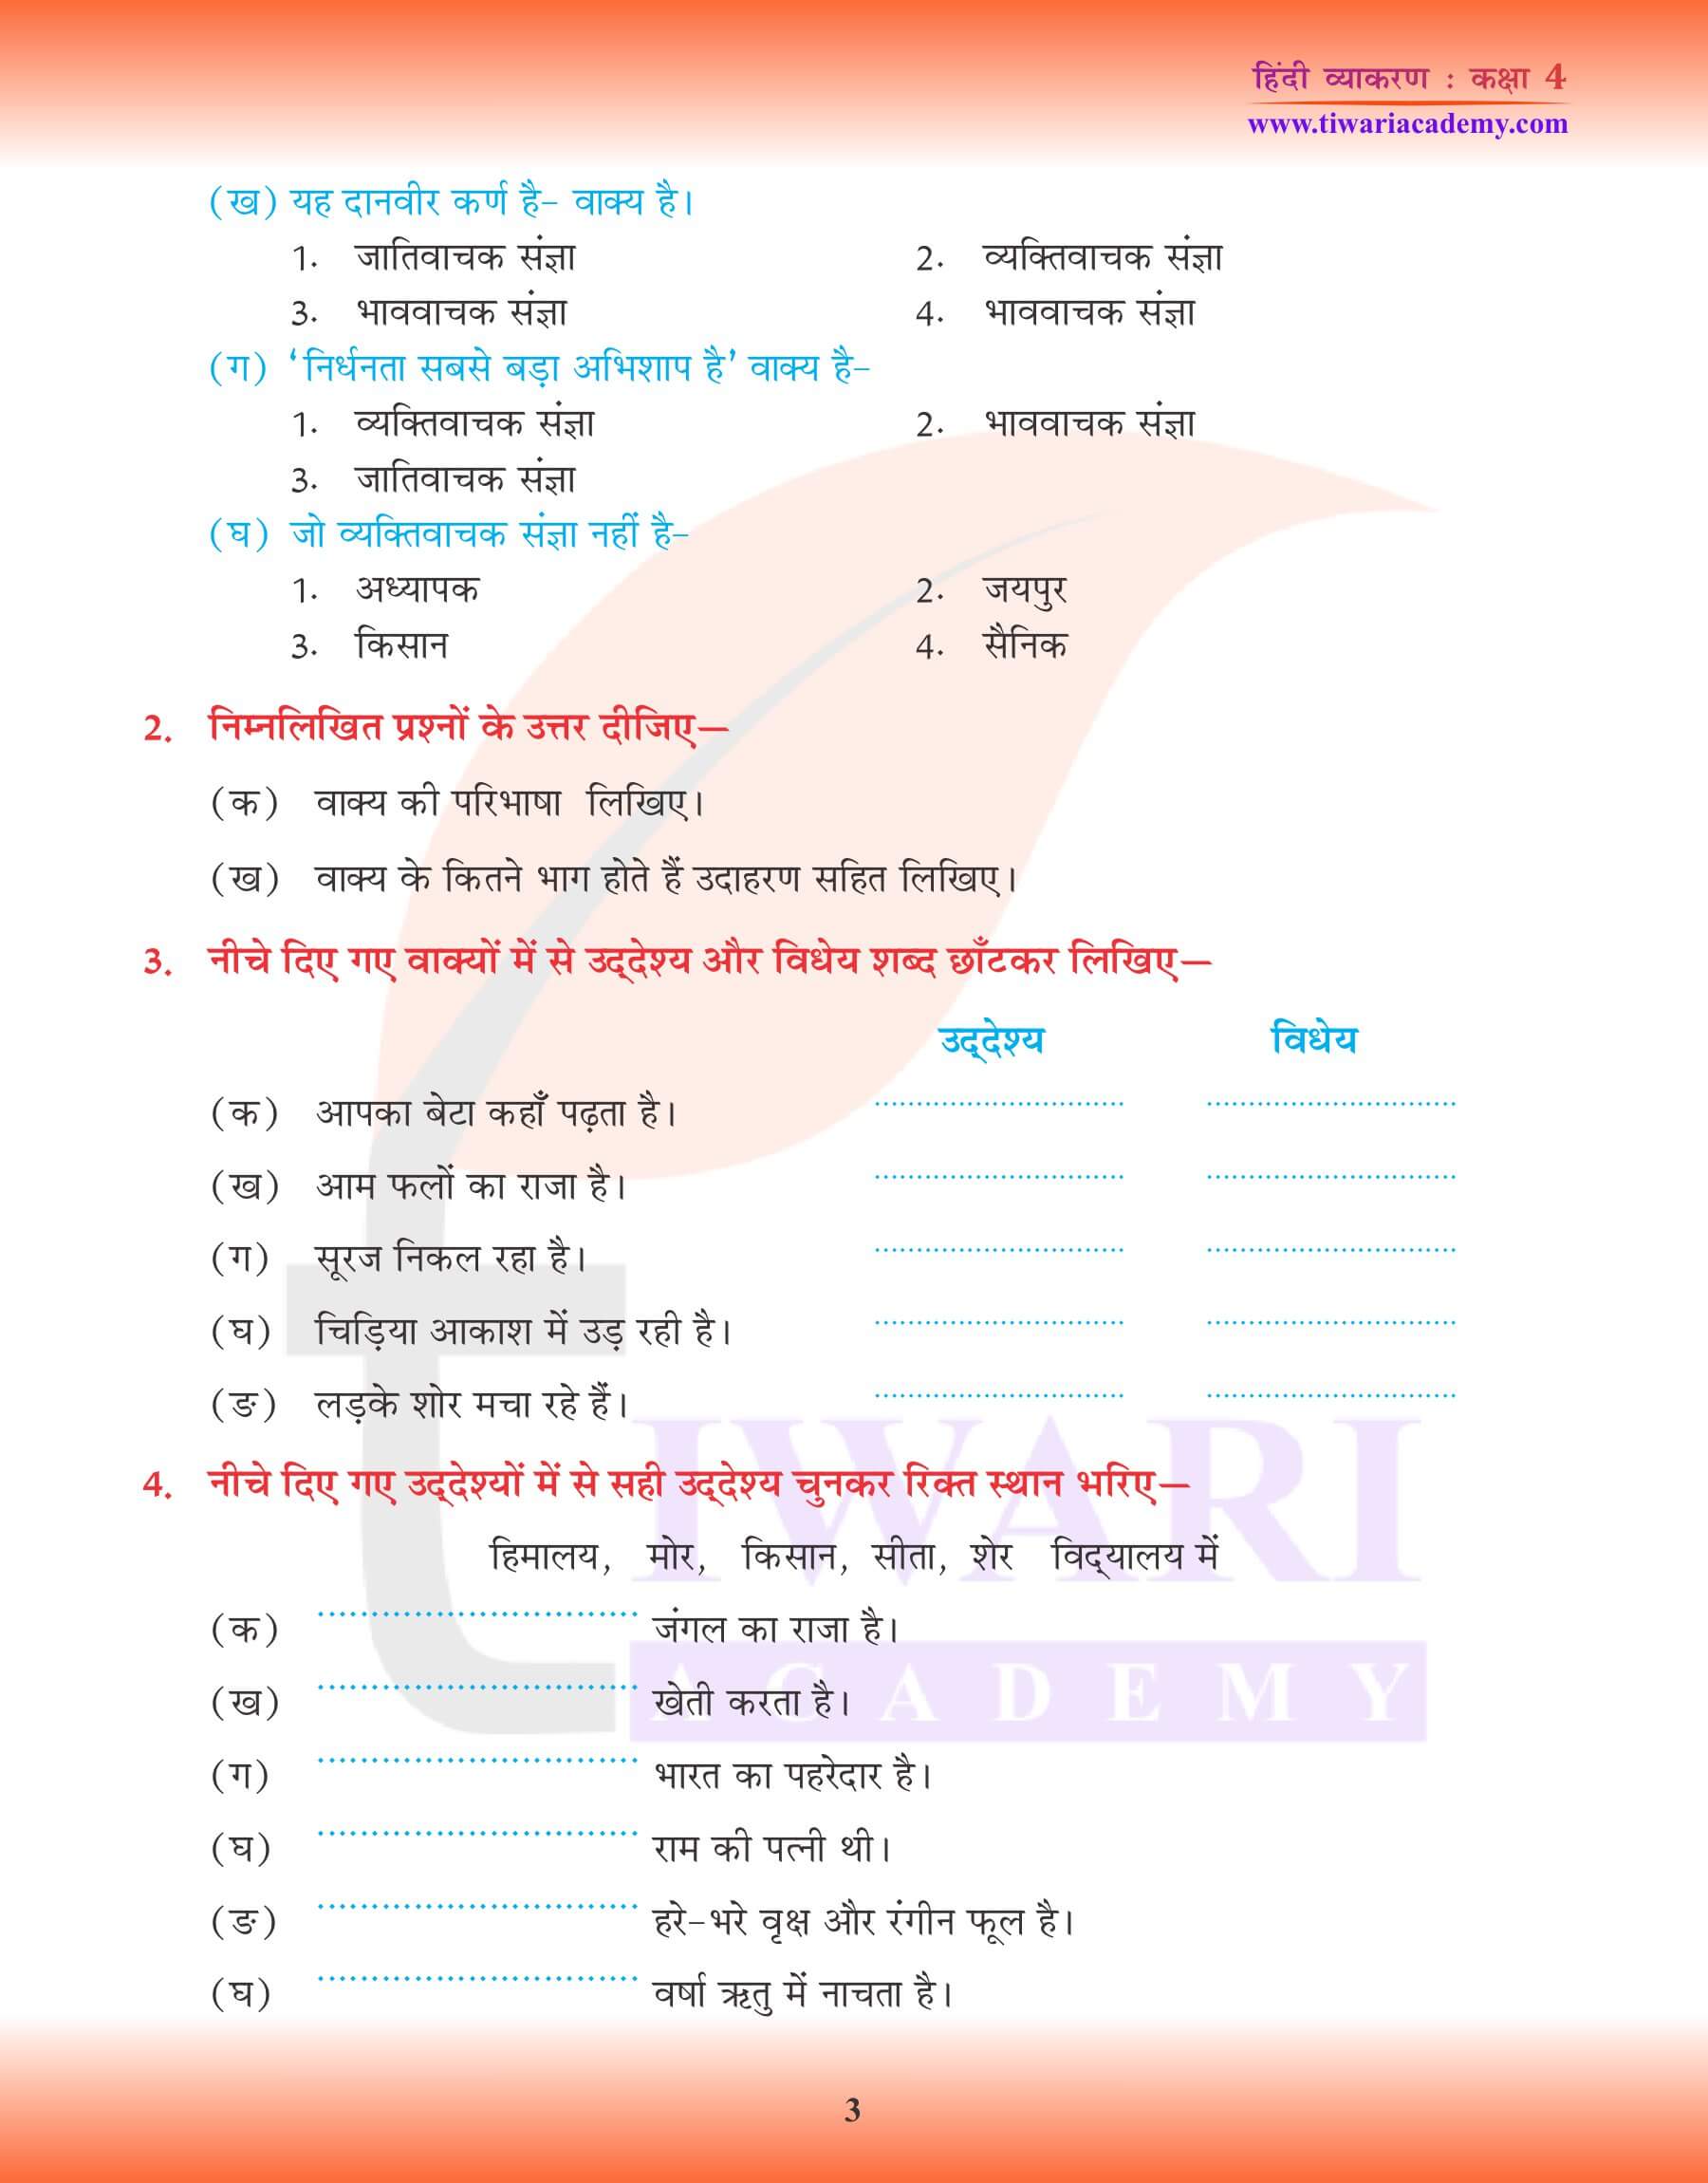 कक्षा 4 हिंदी व्याकरण में वाक्य तथा उसके भेद